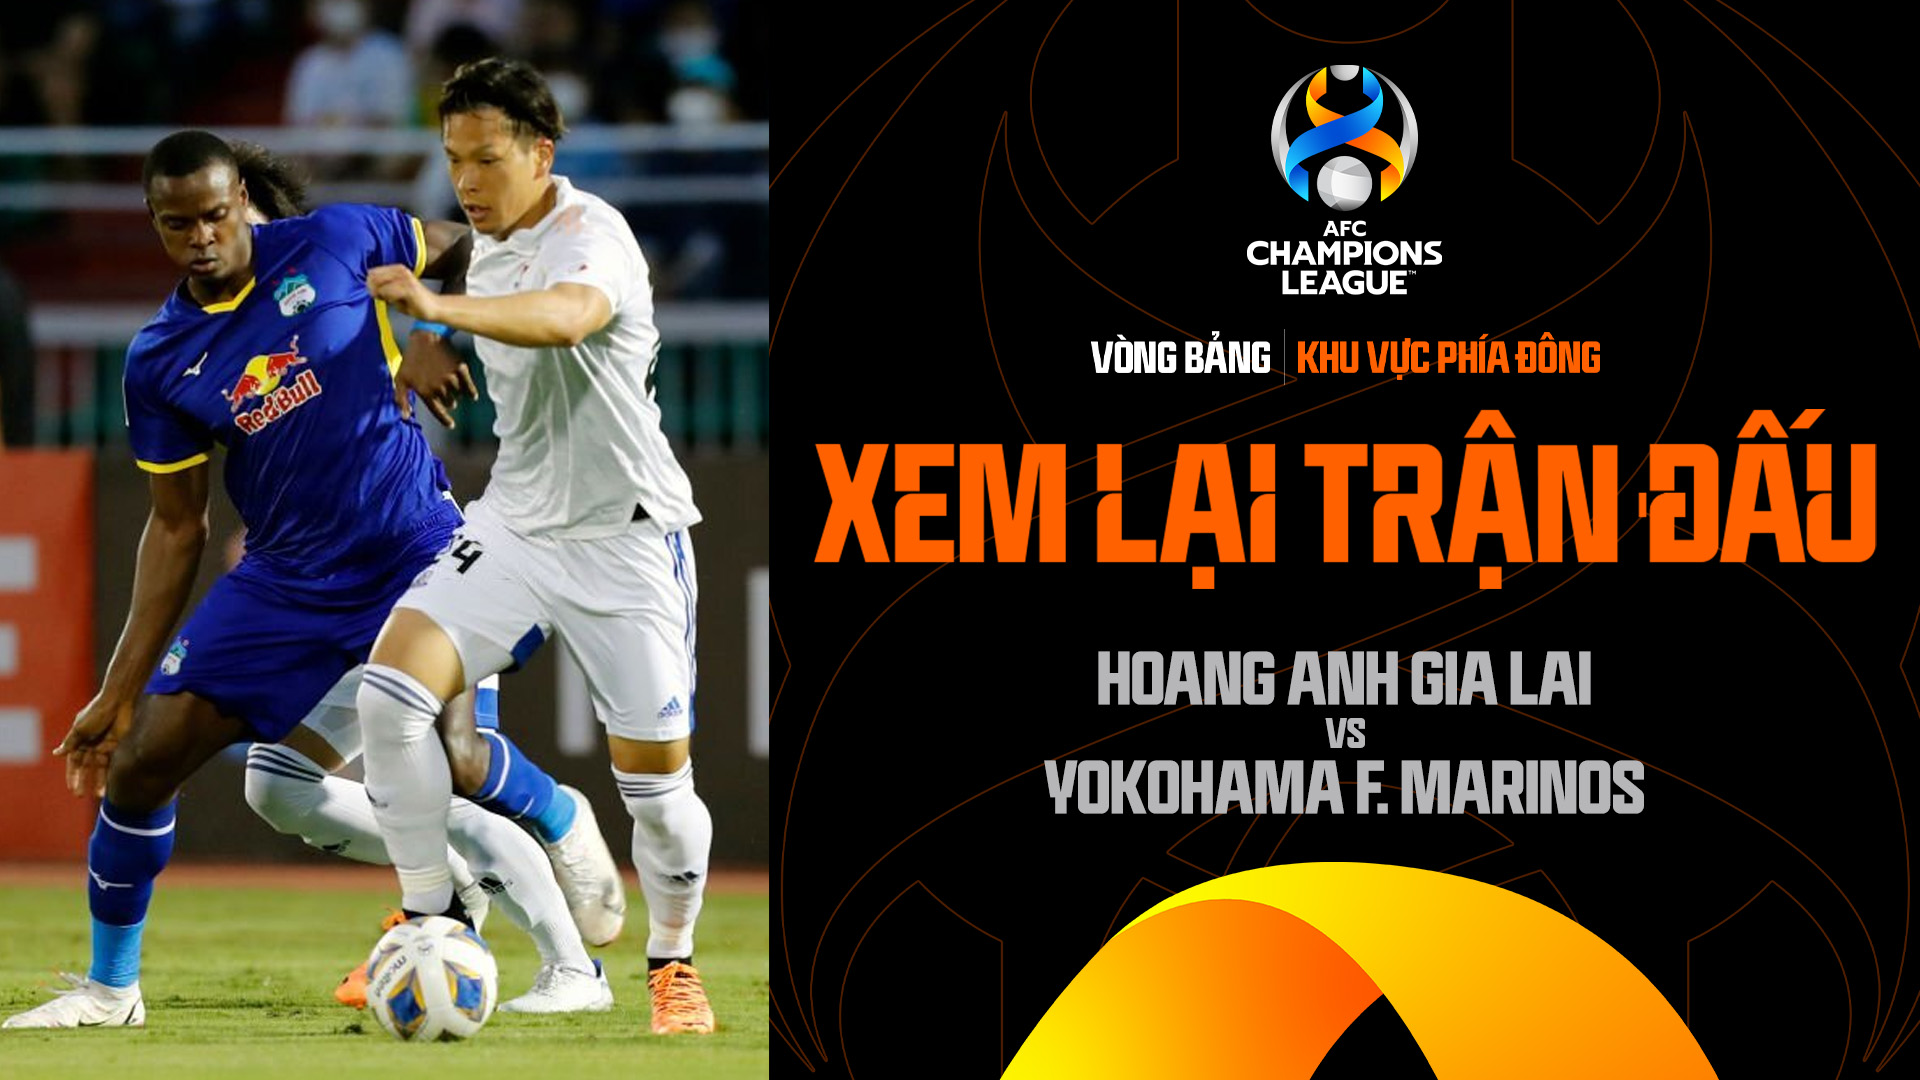 Hoàng Anh Gia Lai - Yokohama F. Marinos | Xem lại trận đấu - AFC Champions League